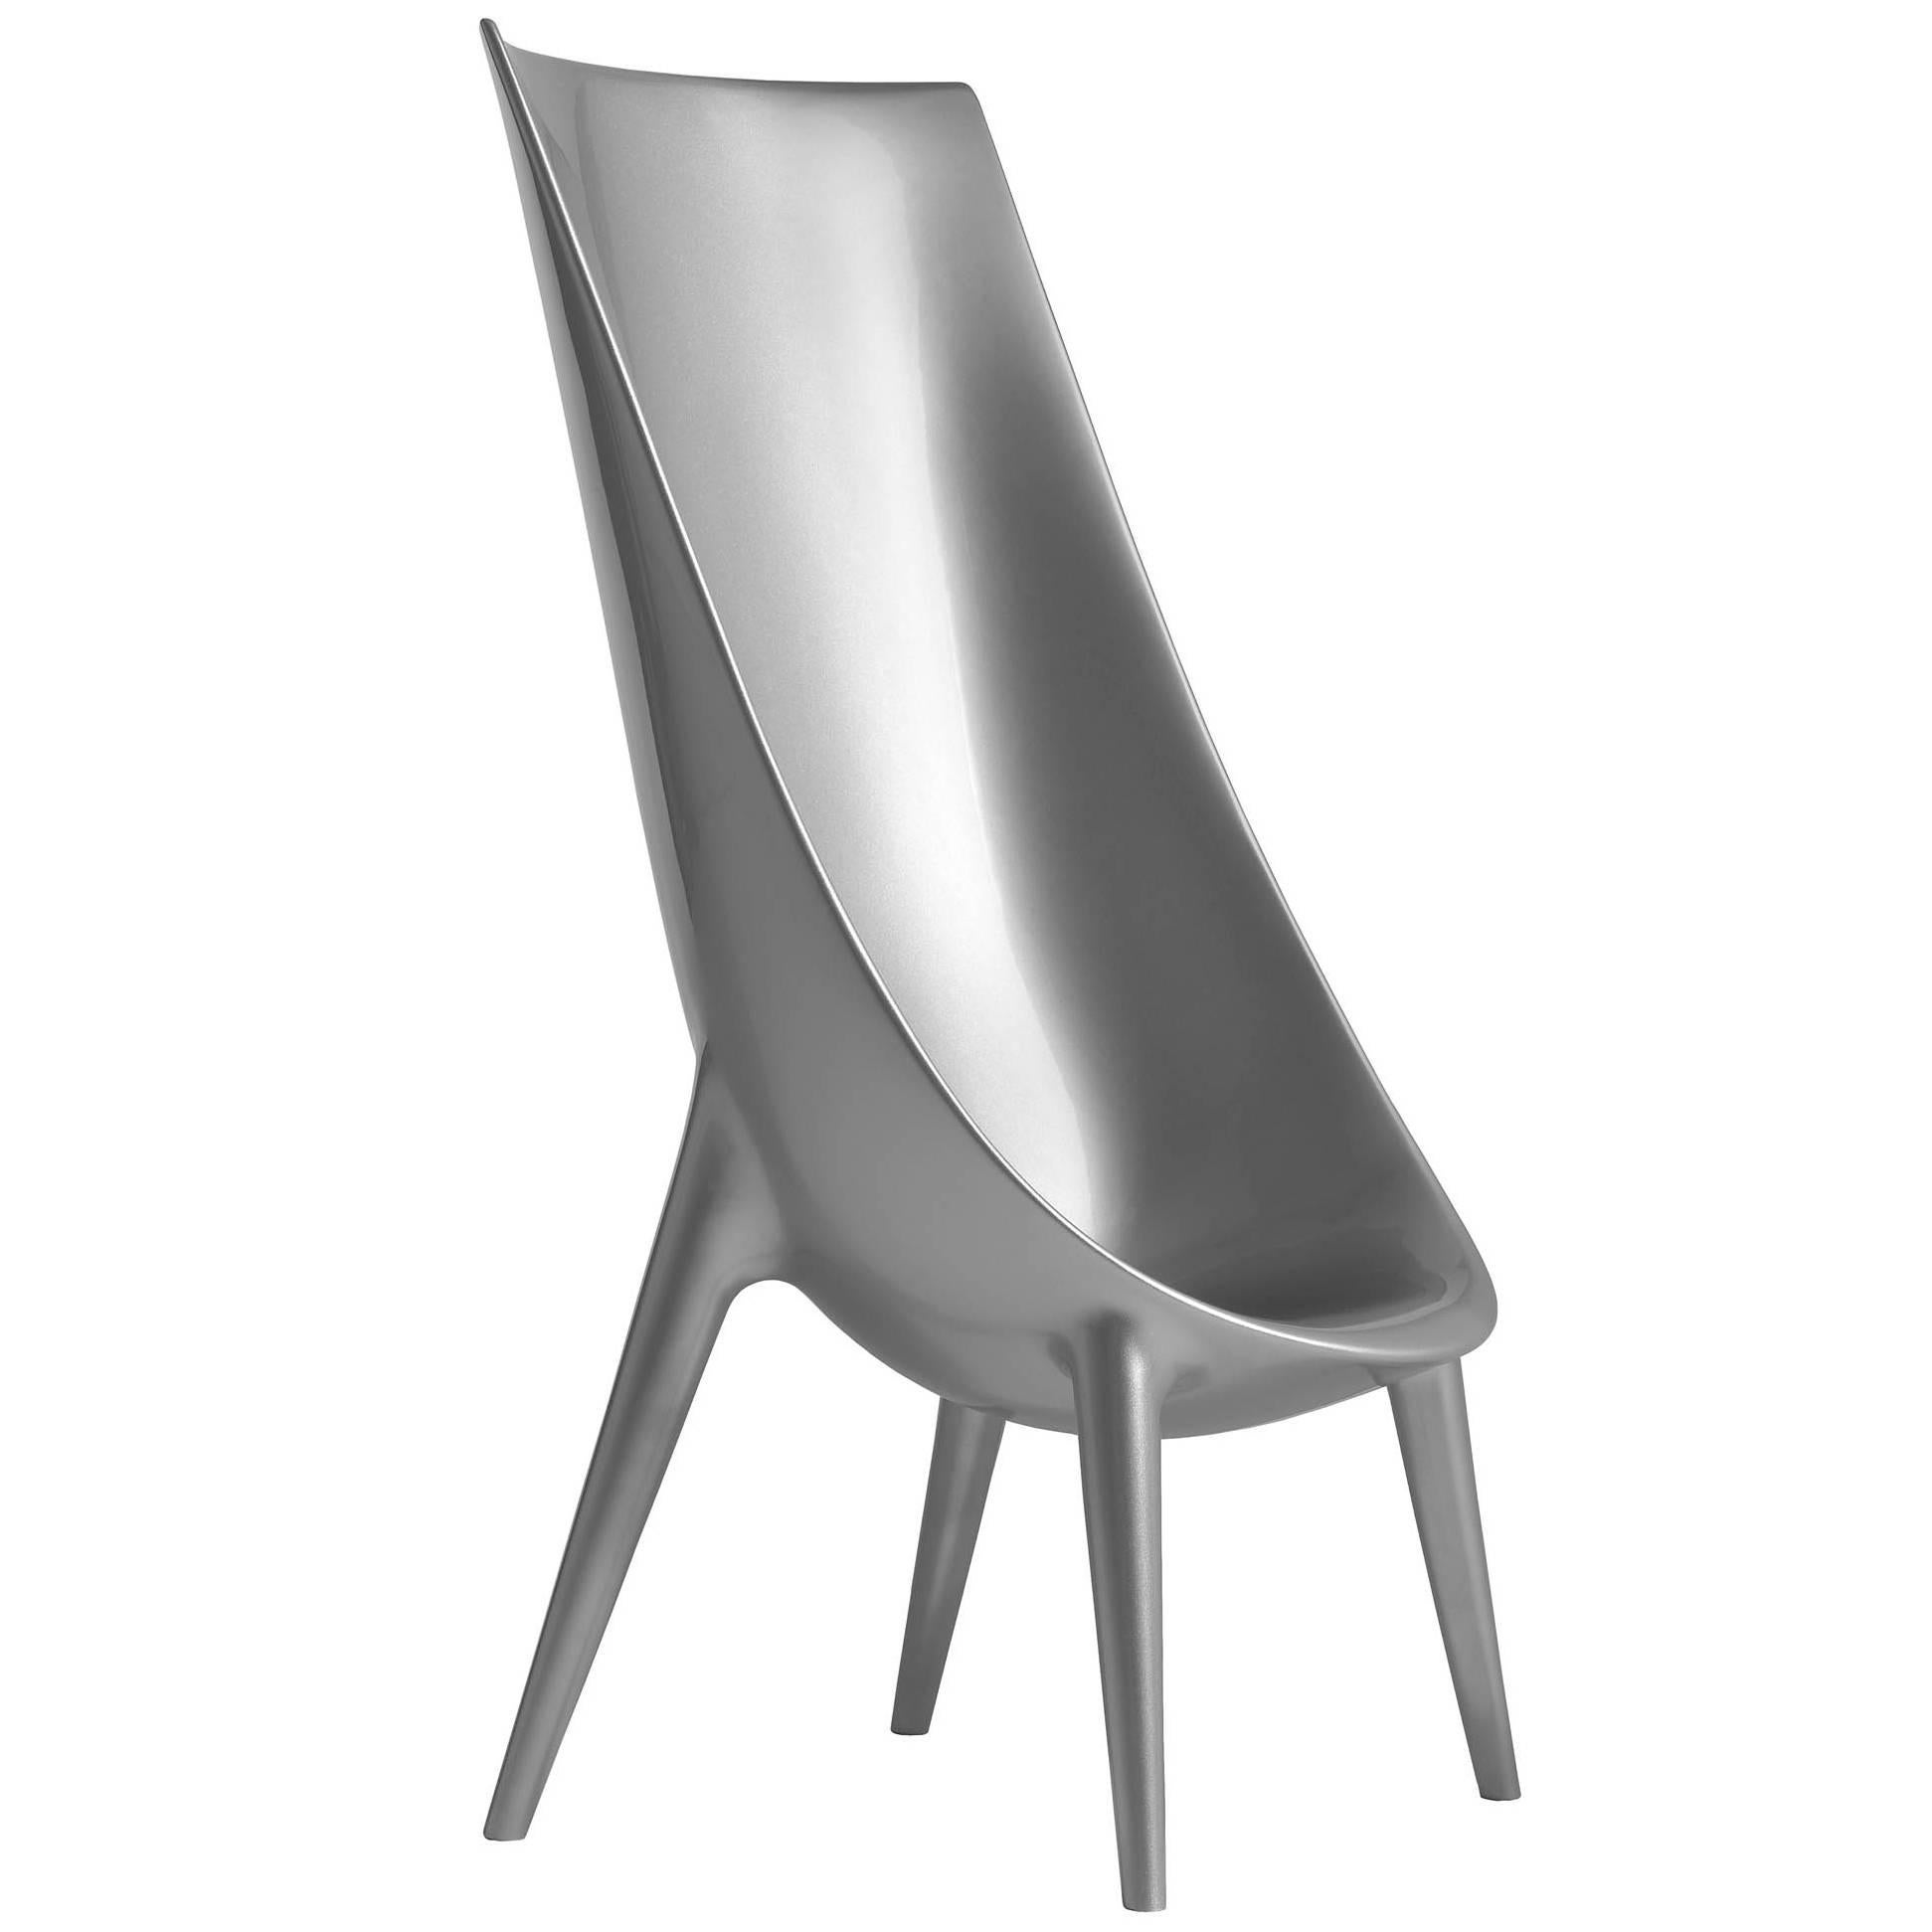 Chaise haute gris argenté métallisé "Out/In" de P. Starck & E. Quitllet pour Driade